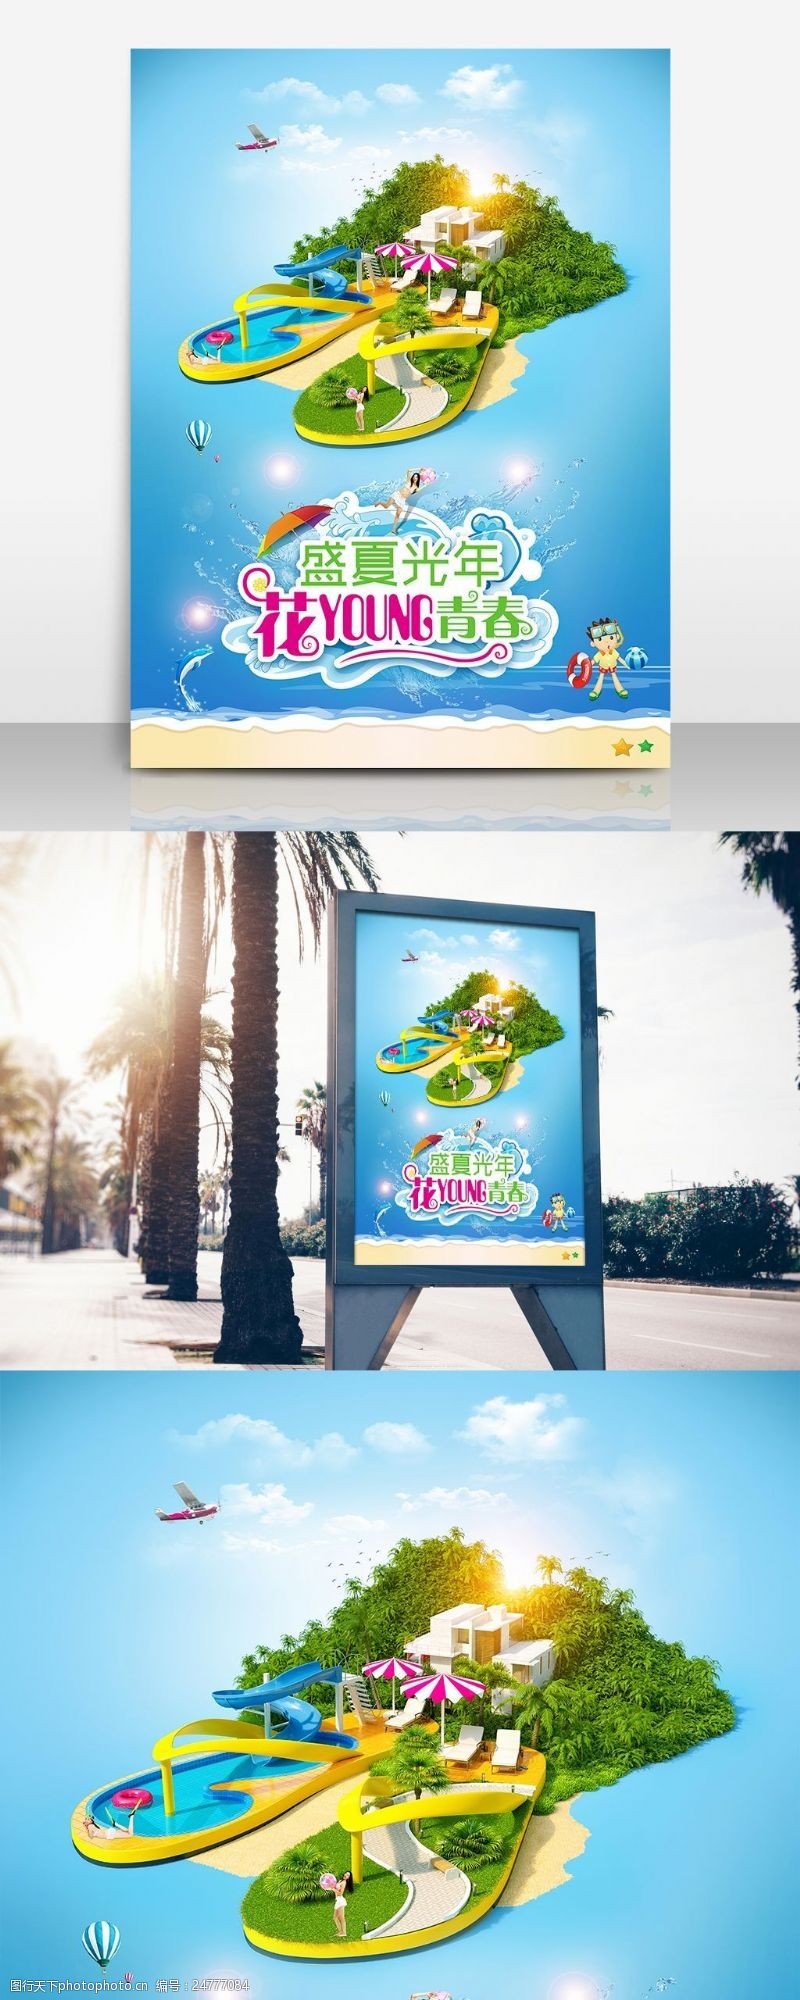 南海区创意花漾游宣传海报设计